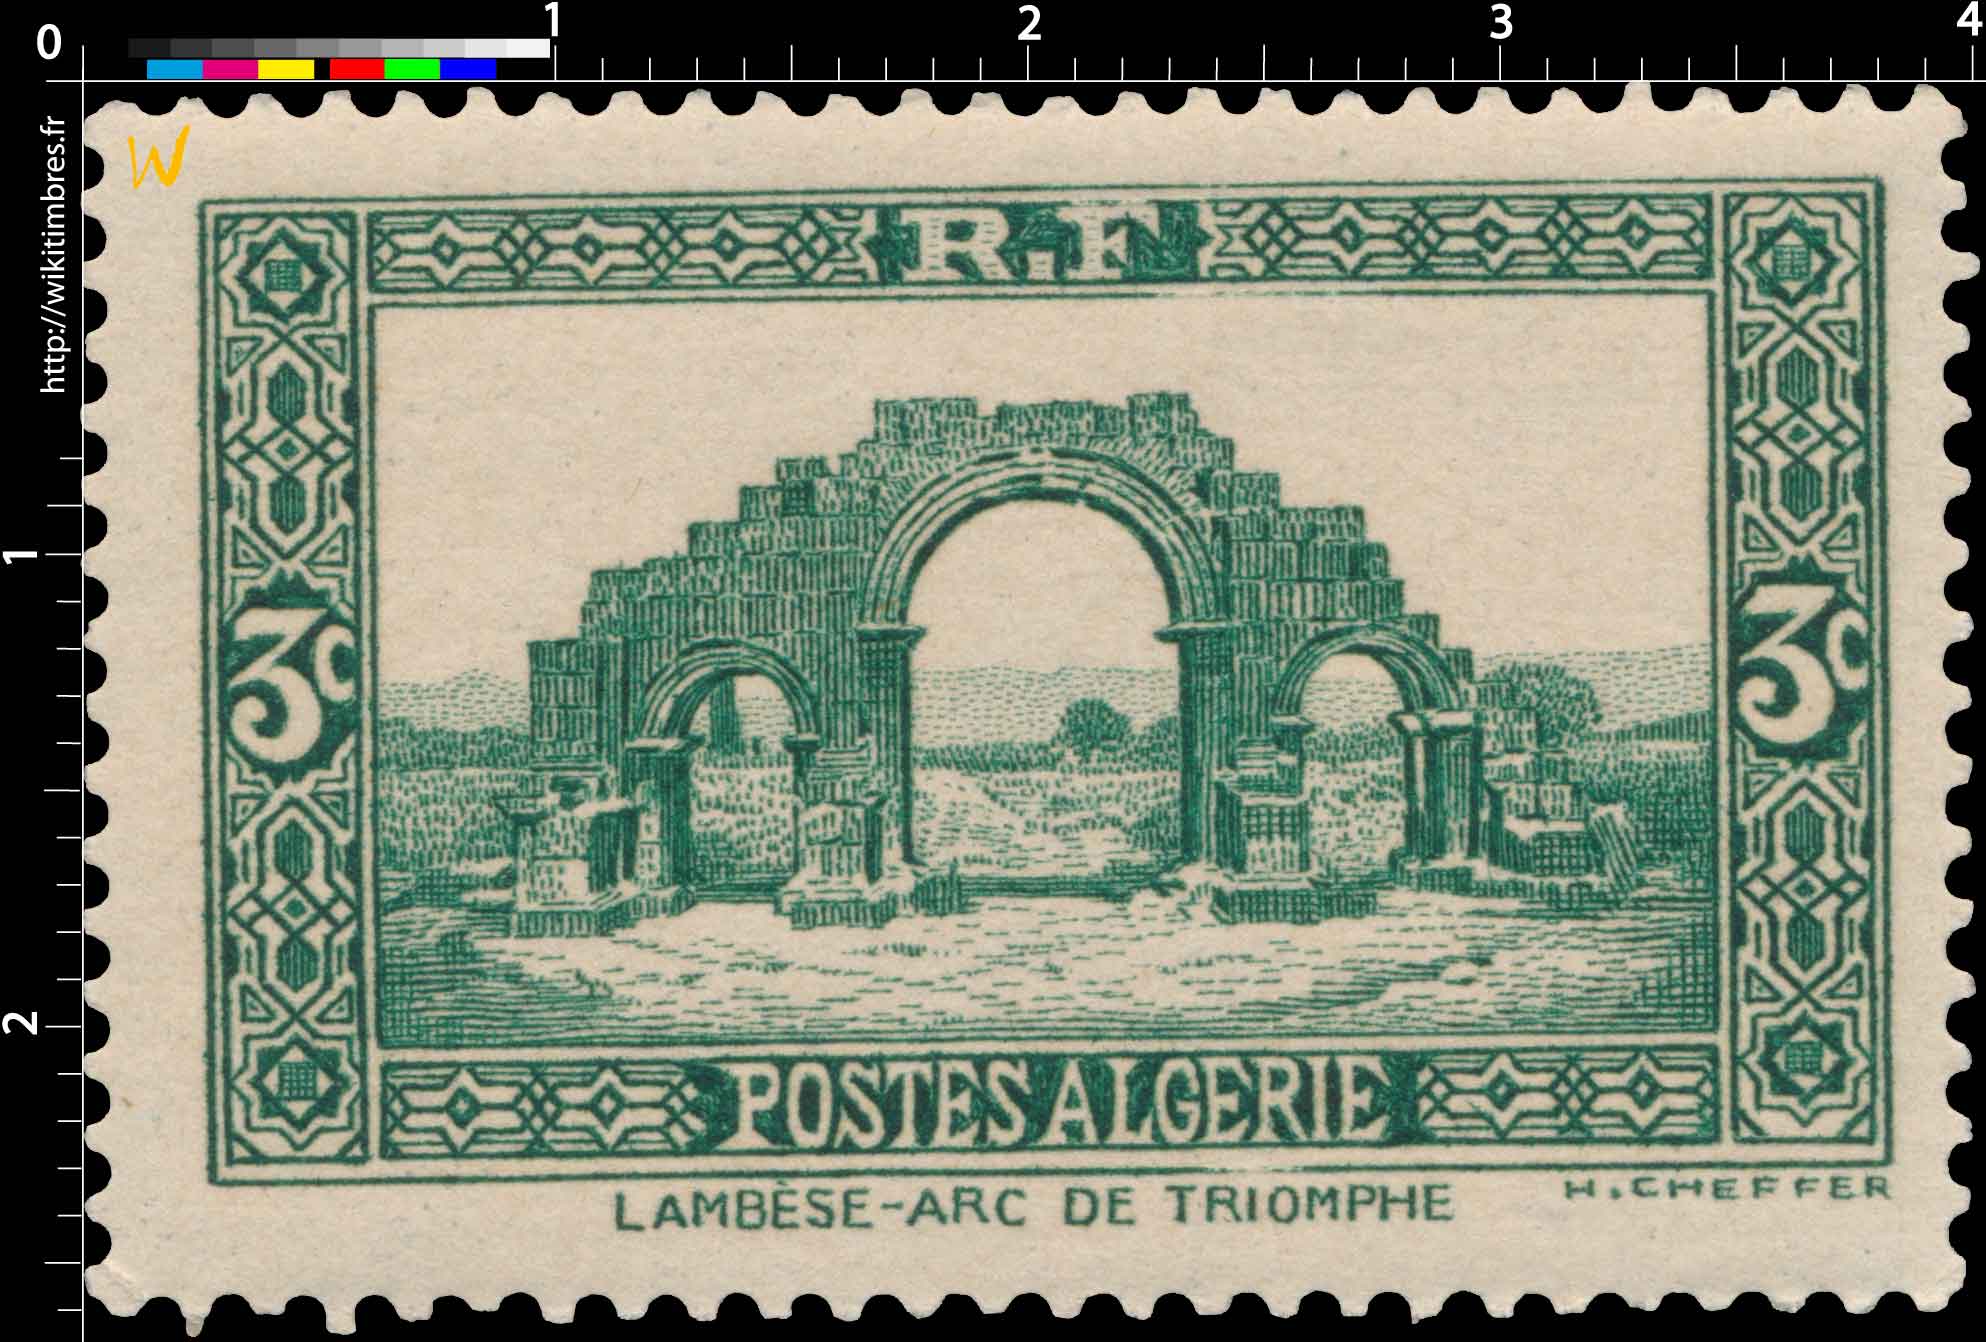 Algérie - Lambèse - Arc de triomphe